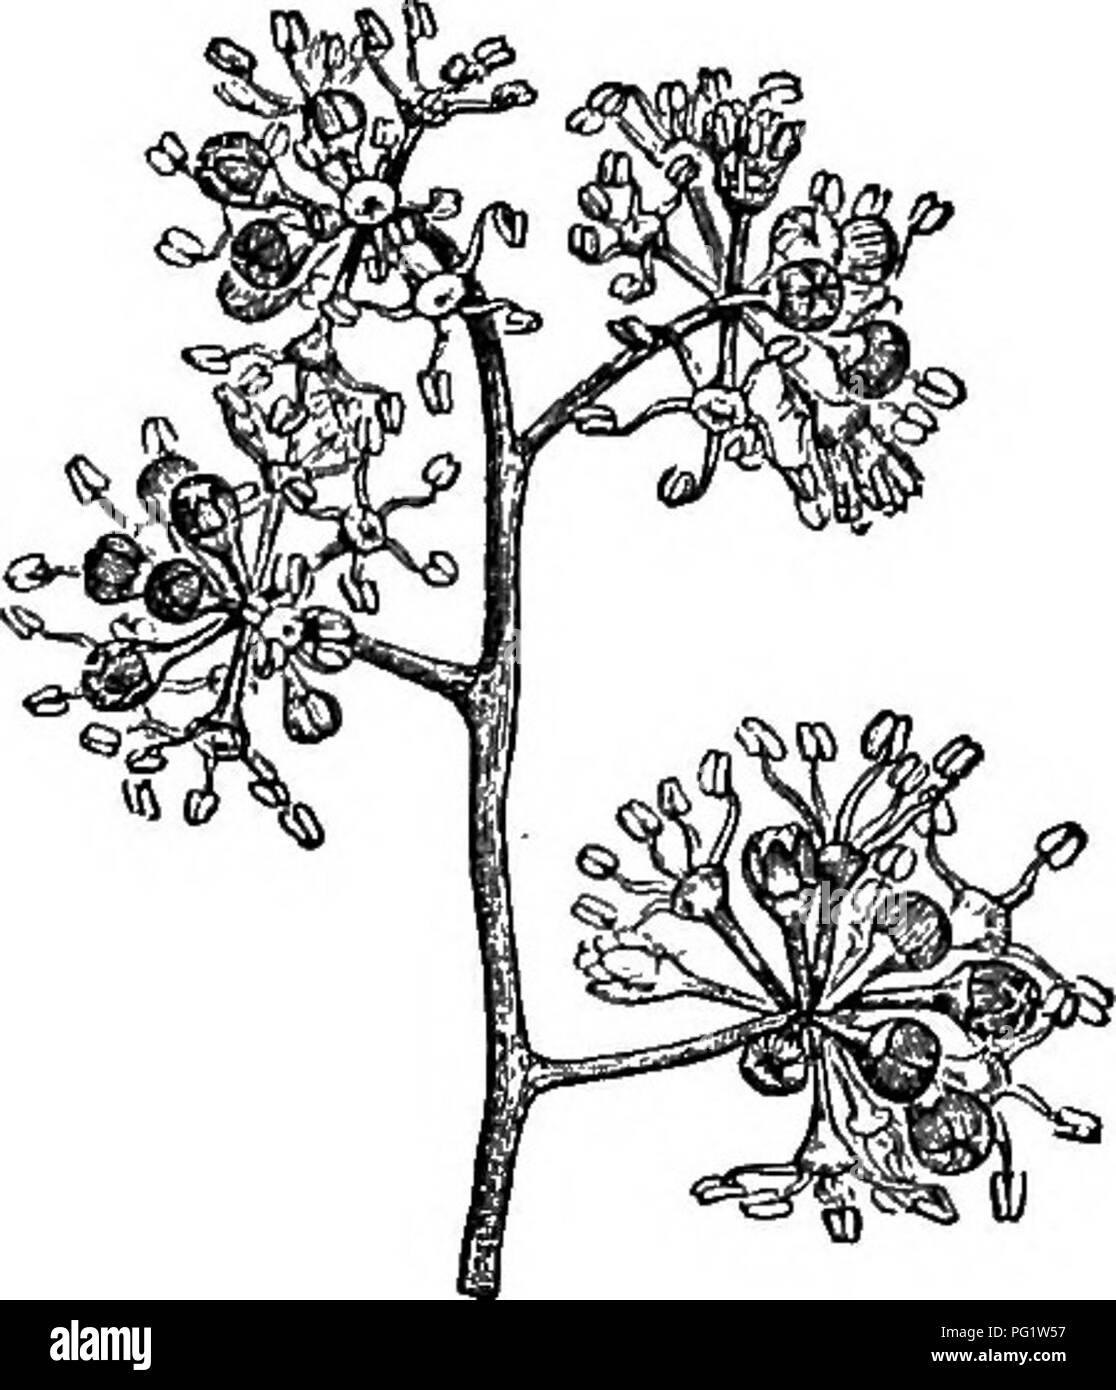 . Die natürliche Geschichte der Pflanzen. Botanik. VMBELLIFEBM. 161 Heptapleunm (Abb. 201) gehört zur selben Gattung wie Scheffleva. Wenn Ihre Blumen pentamerous sind, wie es sehr häufig der Fall ist, ist es deutlich (als Abschnitt) durch nur einen einzigen Charakter: die Kürze des stylary Nocken. Die gemeinsame por- rung der Stil sehr variabel in der Länge ist, '^'''''^''^[fZT "''"'"^ manchmal sehr deprimiert oder fast Null, manchmal in einem sehr markanten Kegel erweitert. Wie es scheint, die unter anderem in Agalma, dessen Blütenstand ist racemiform, und bei einigen Arten in der Astropanax, deren Blüten, l Stockfoto